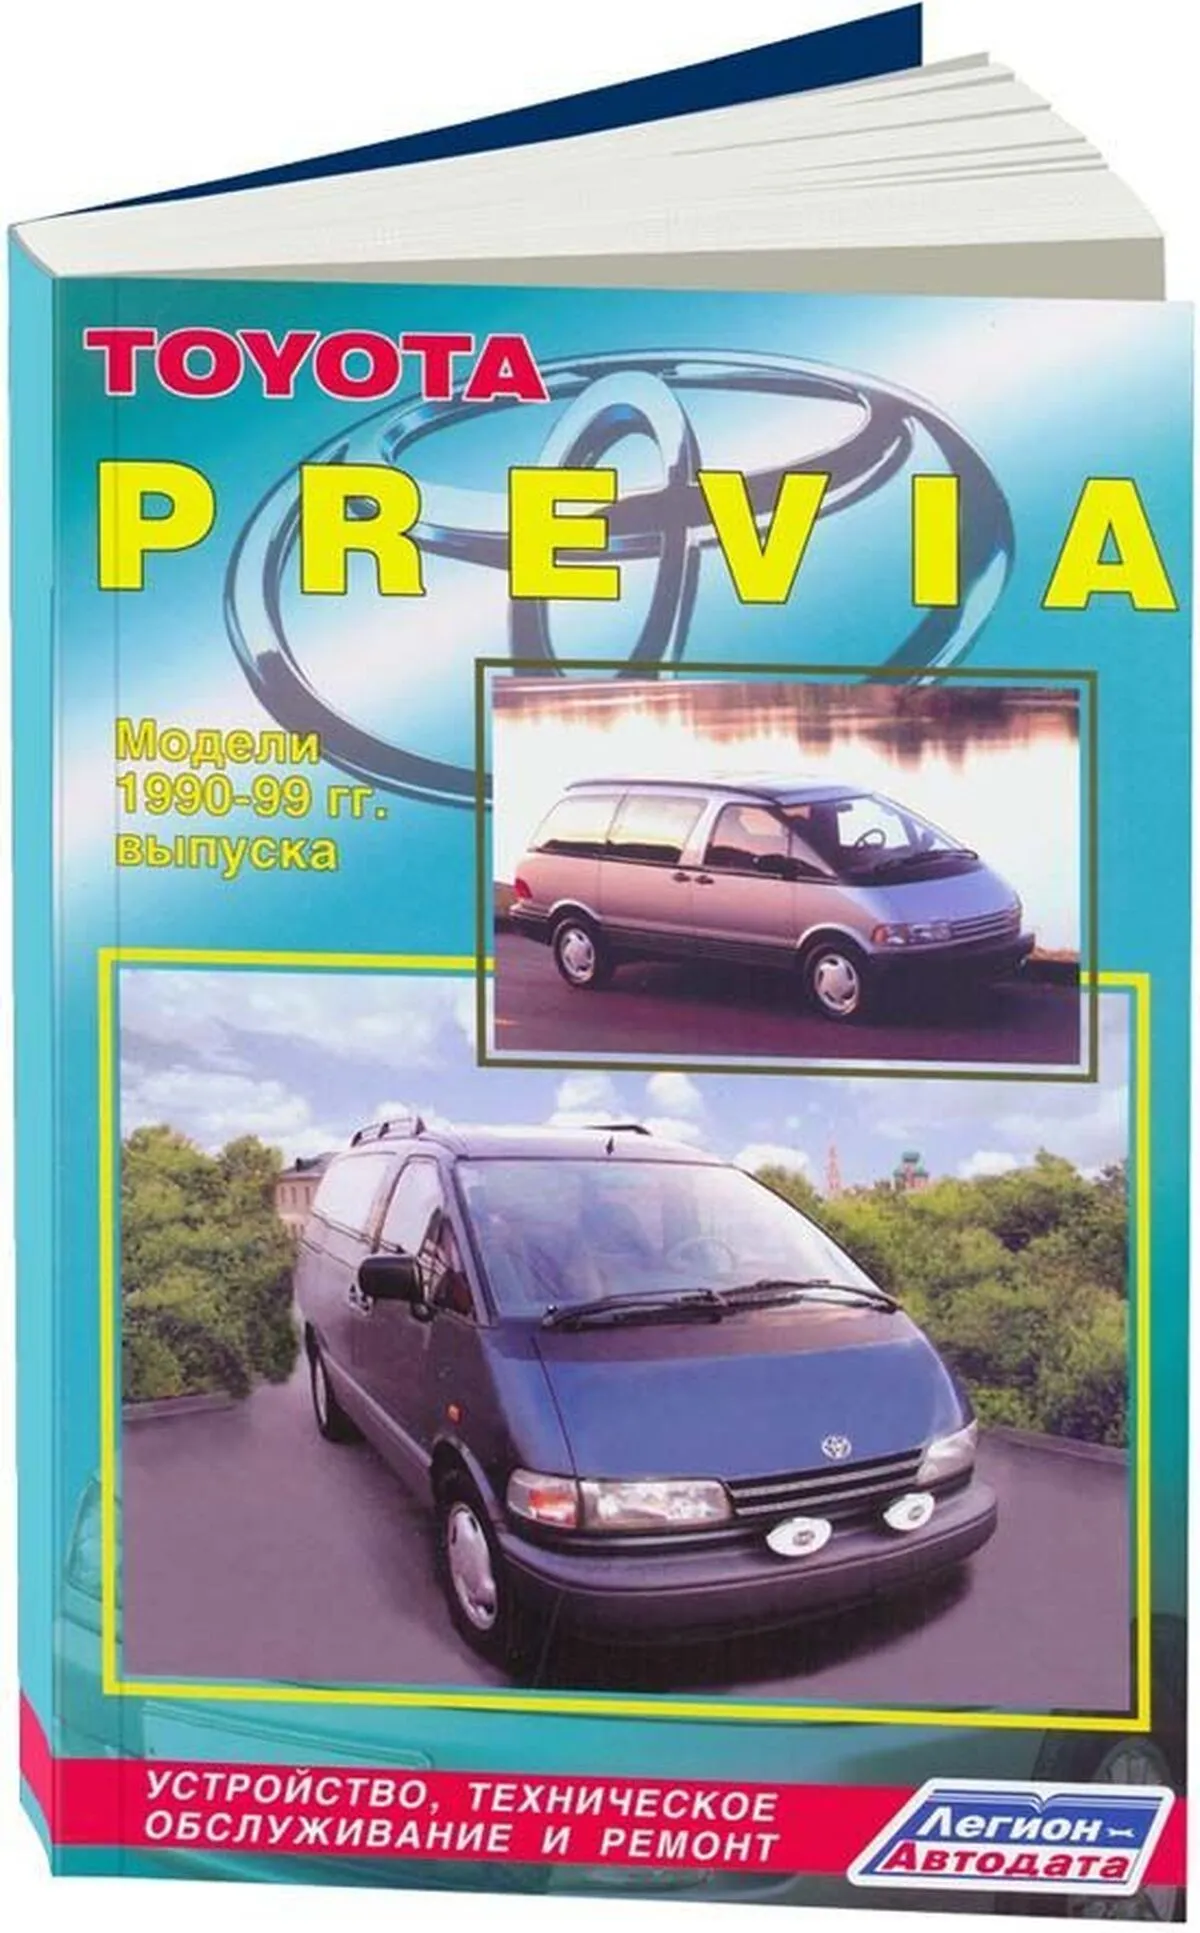 Книга: TOYOTA PREVIA (б) 1990-2000 г.в., рем., экспл., то | Легион-Aвтодата